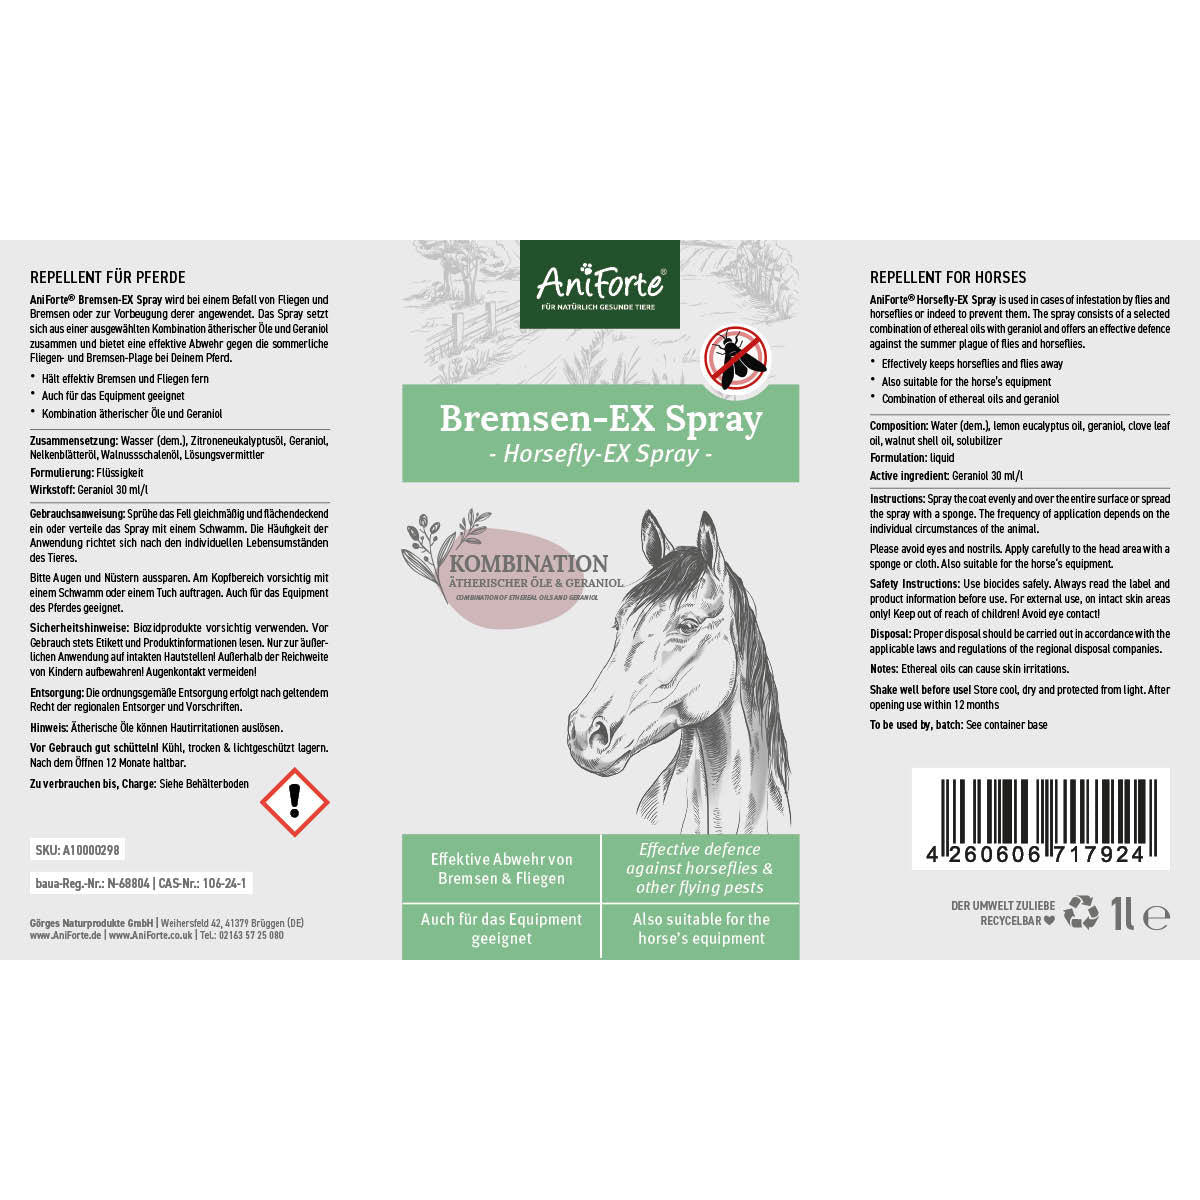 Bremsen-EX Spray - AniForte